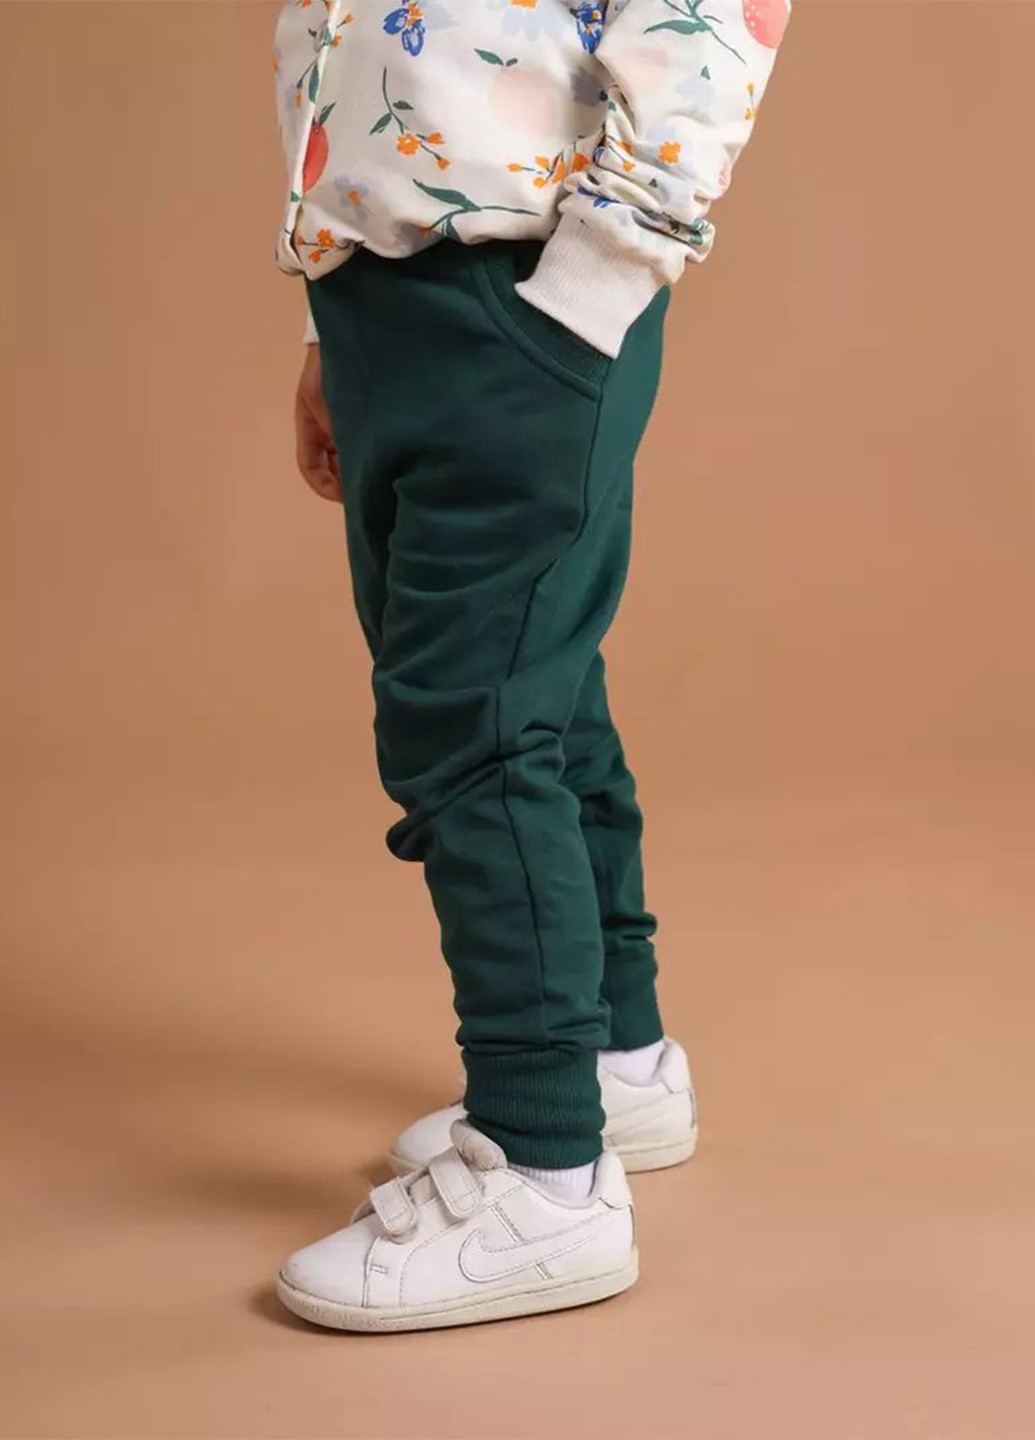 Зеленые спортивные демисезонные джоггеры брюки BBL